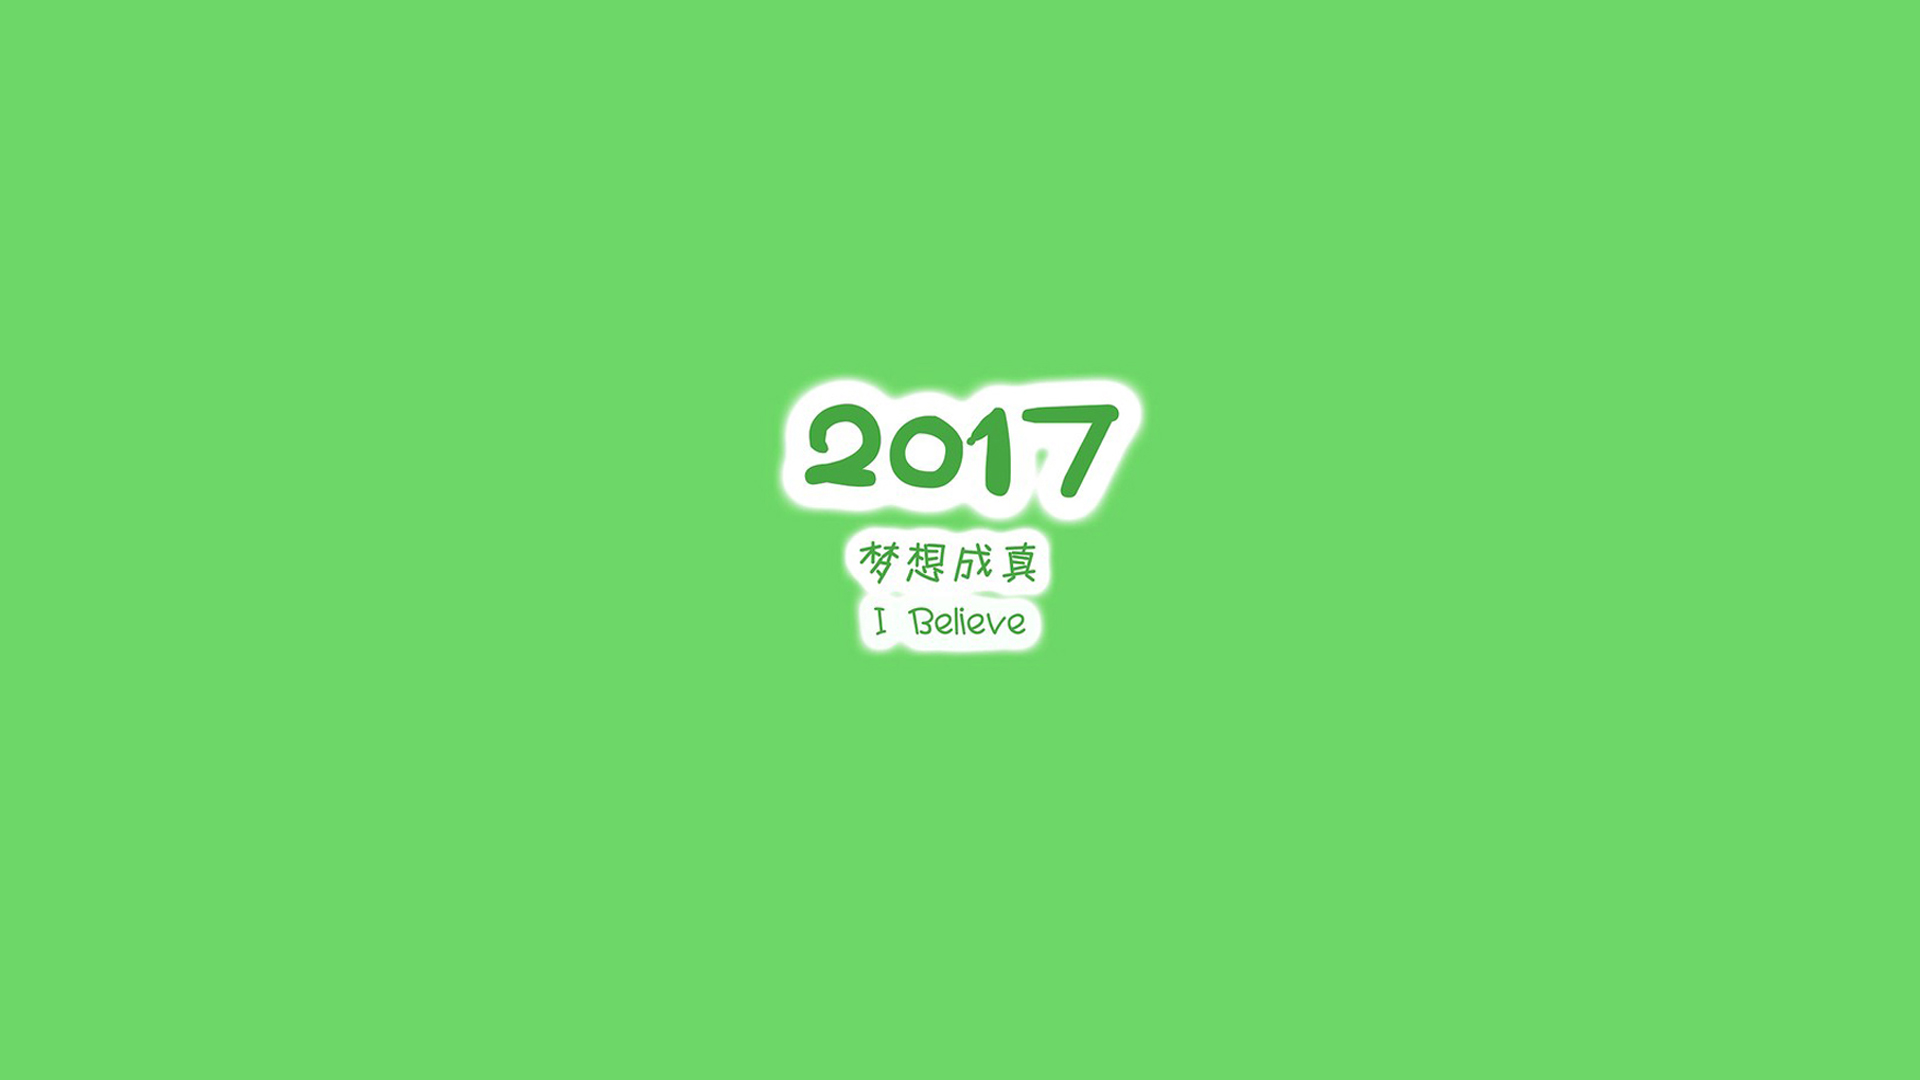 2017年创意手机简约励志文字壁纸